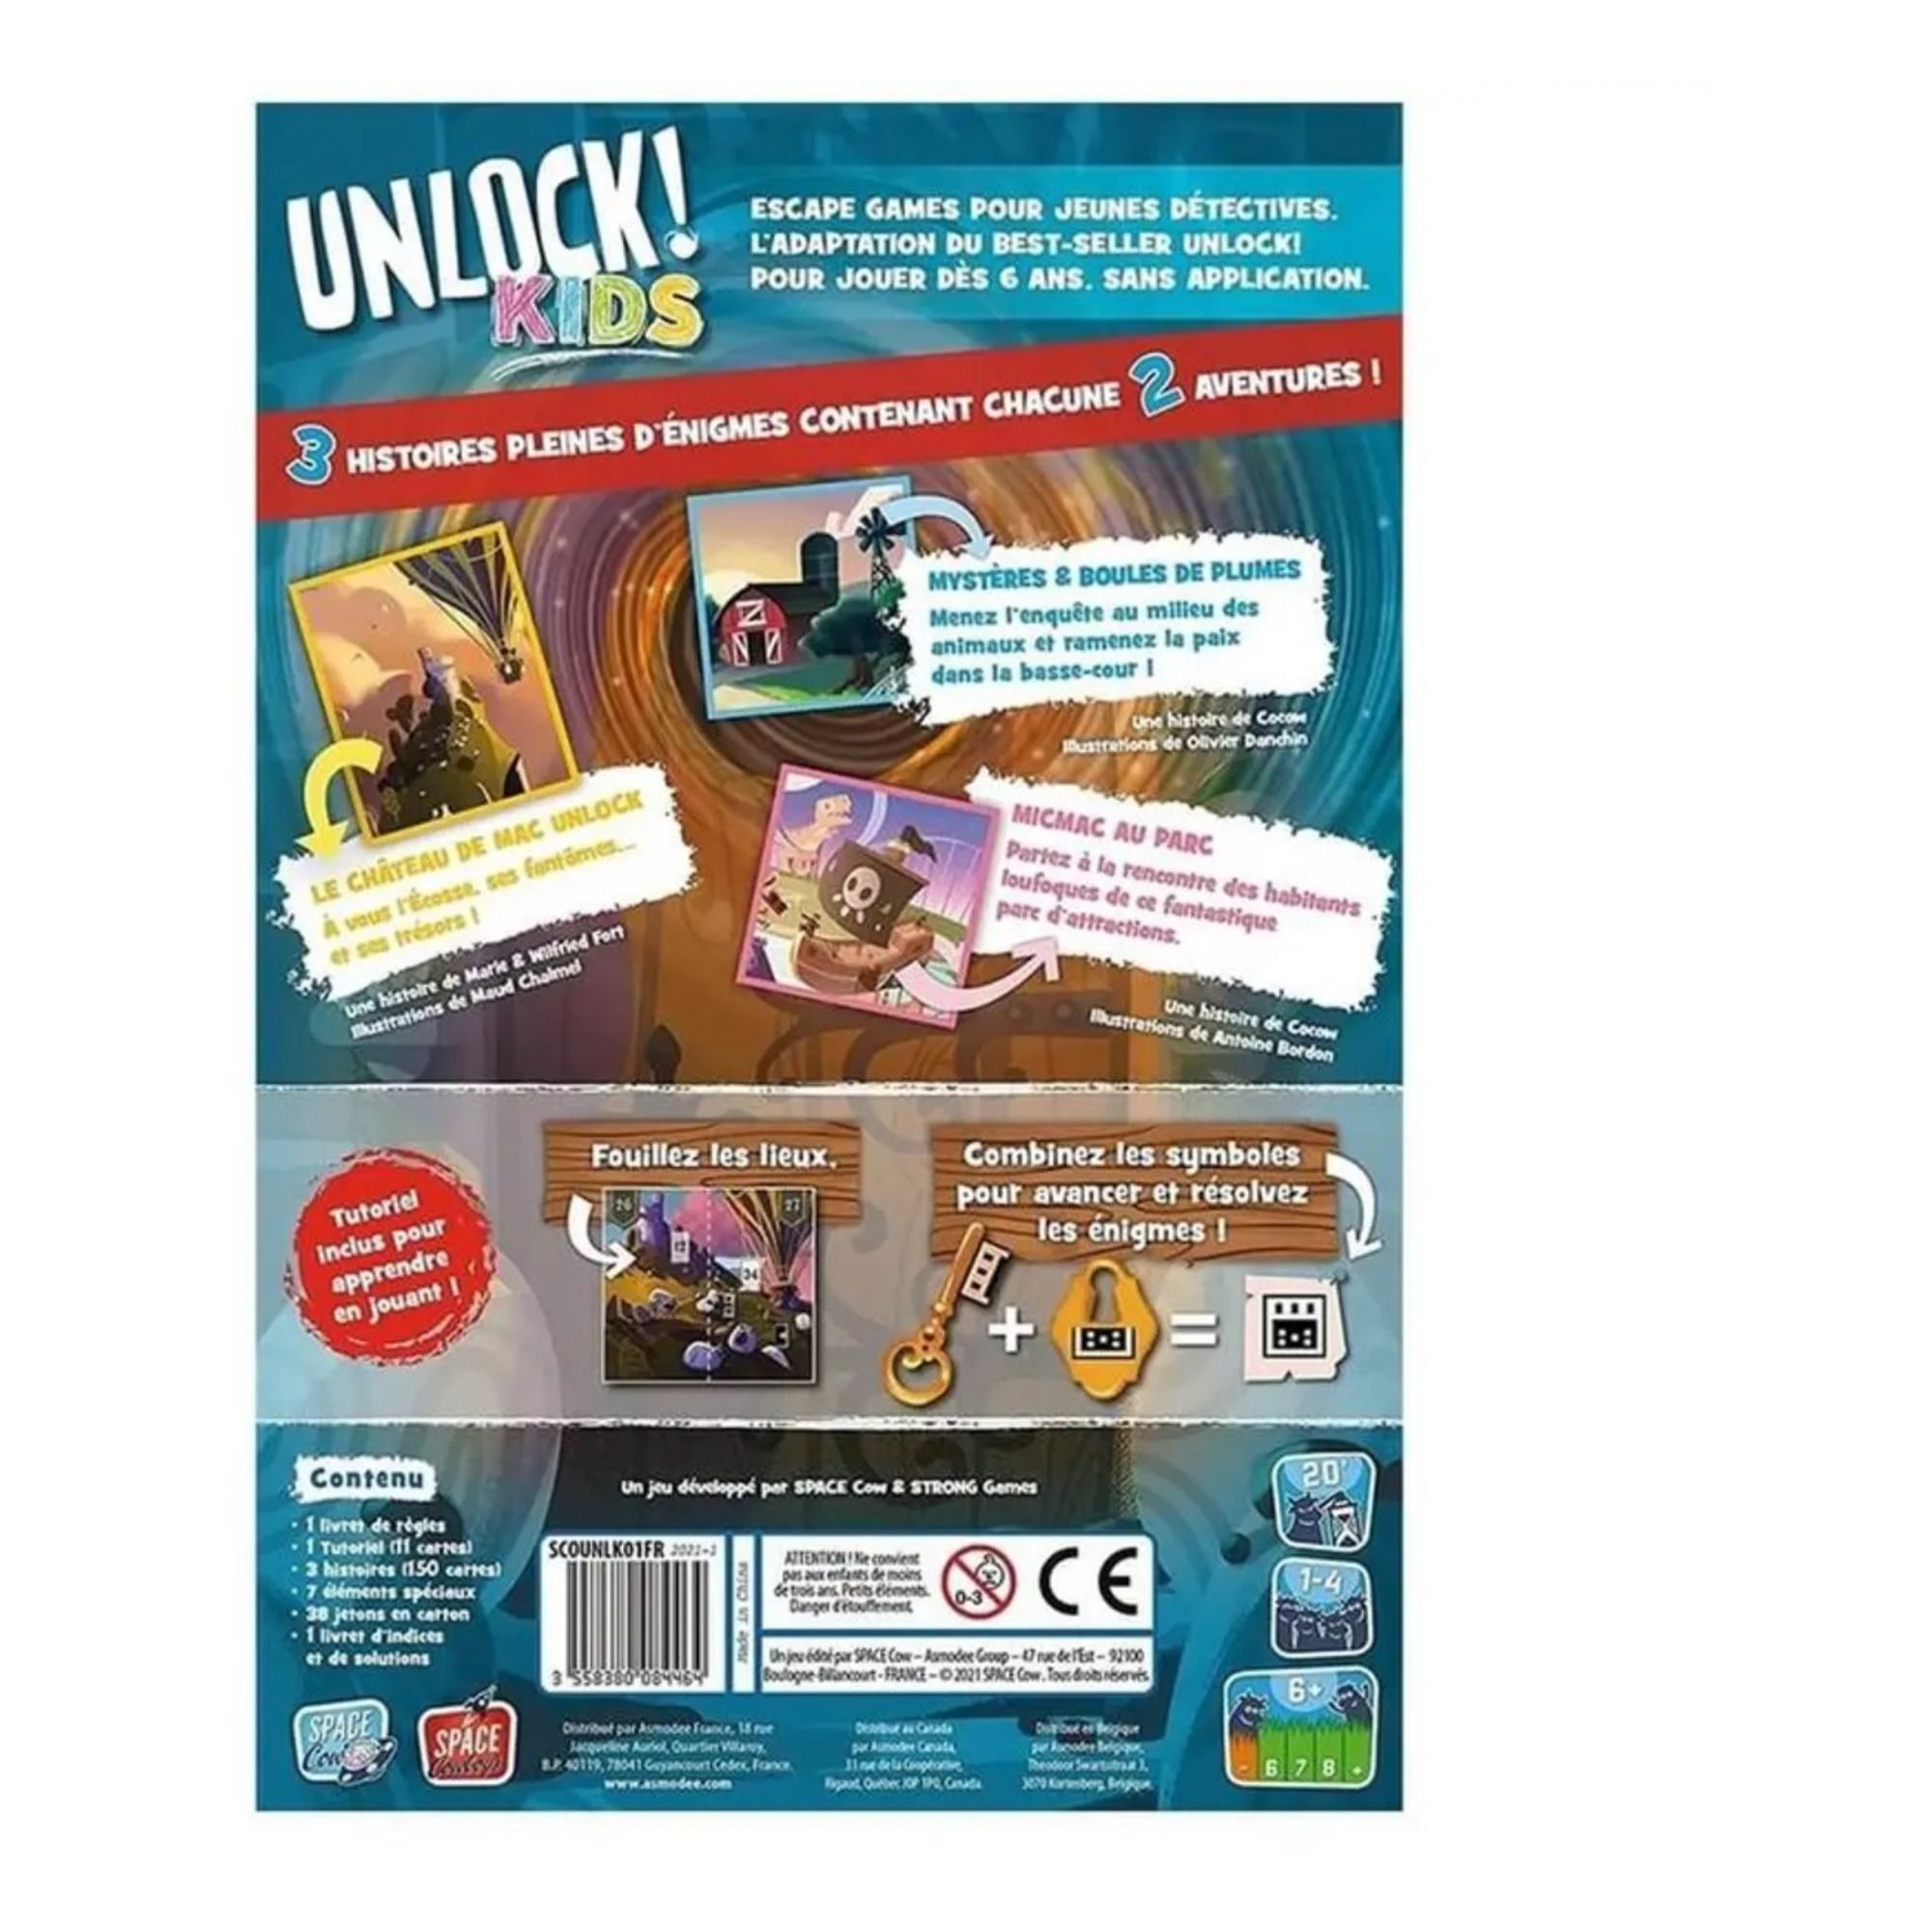 ESCAPE GAME ] Unlock! Kids - Histoires de détectives